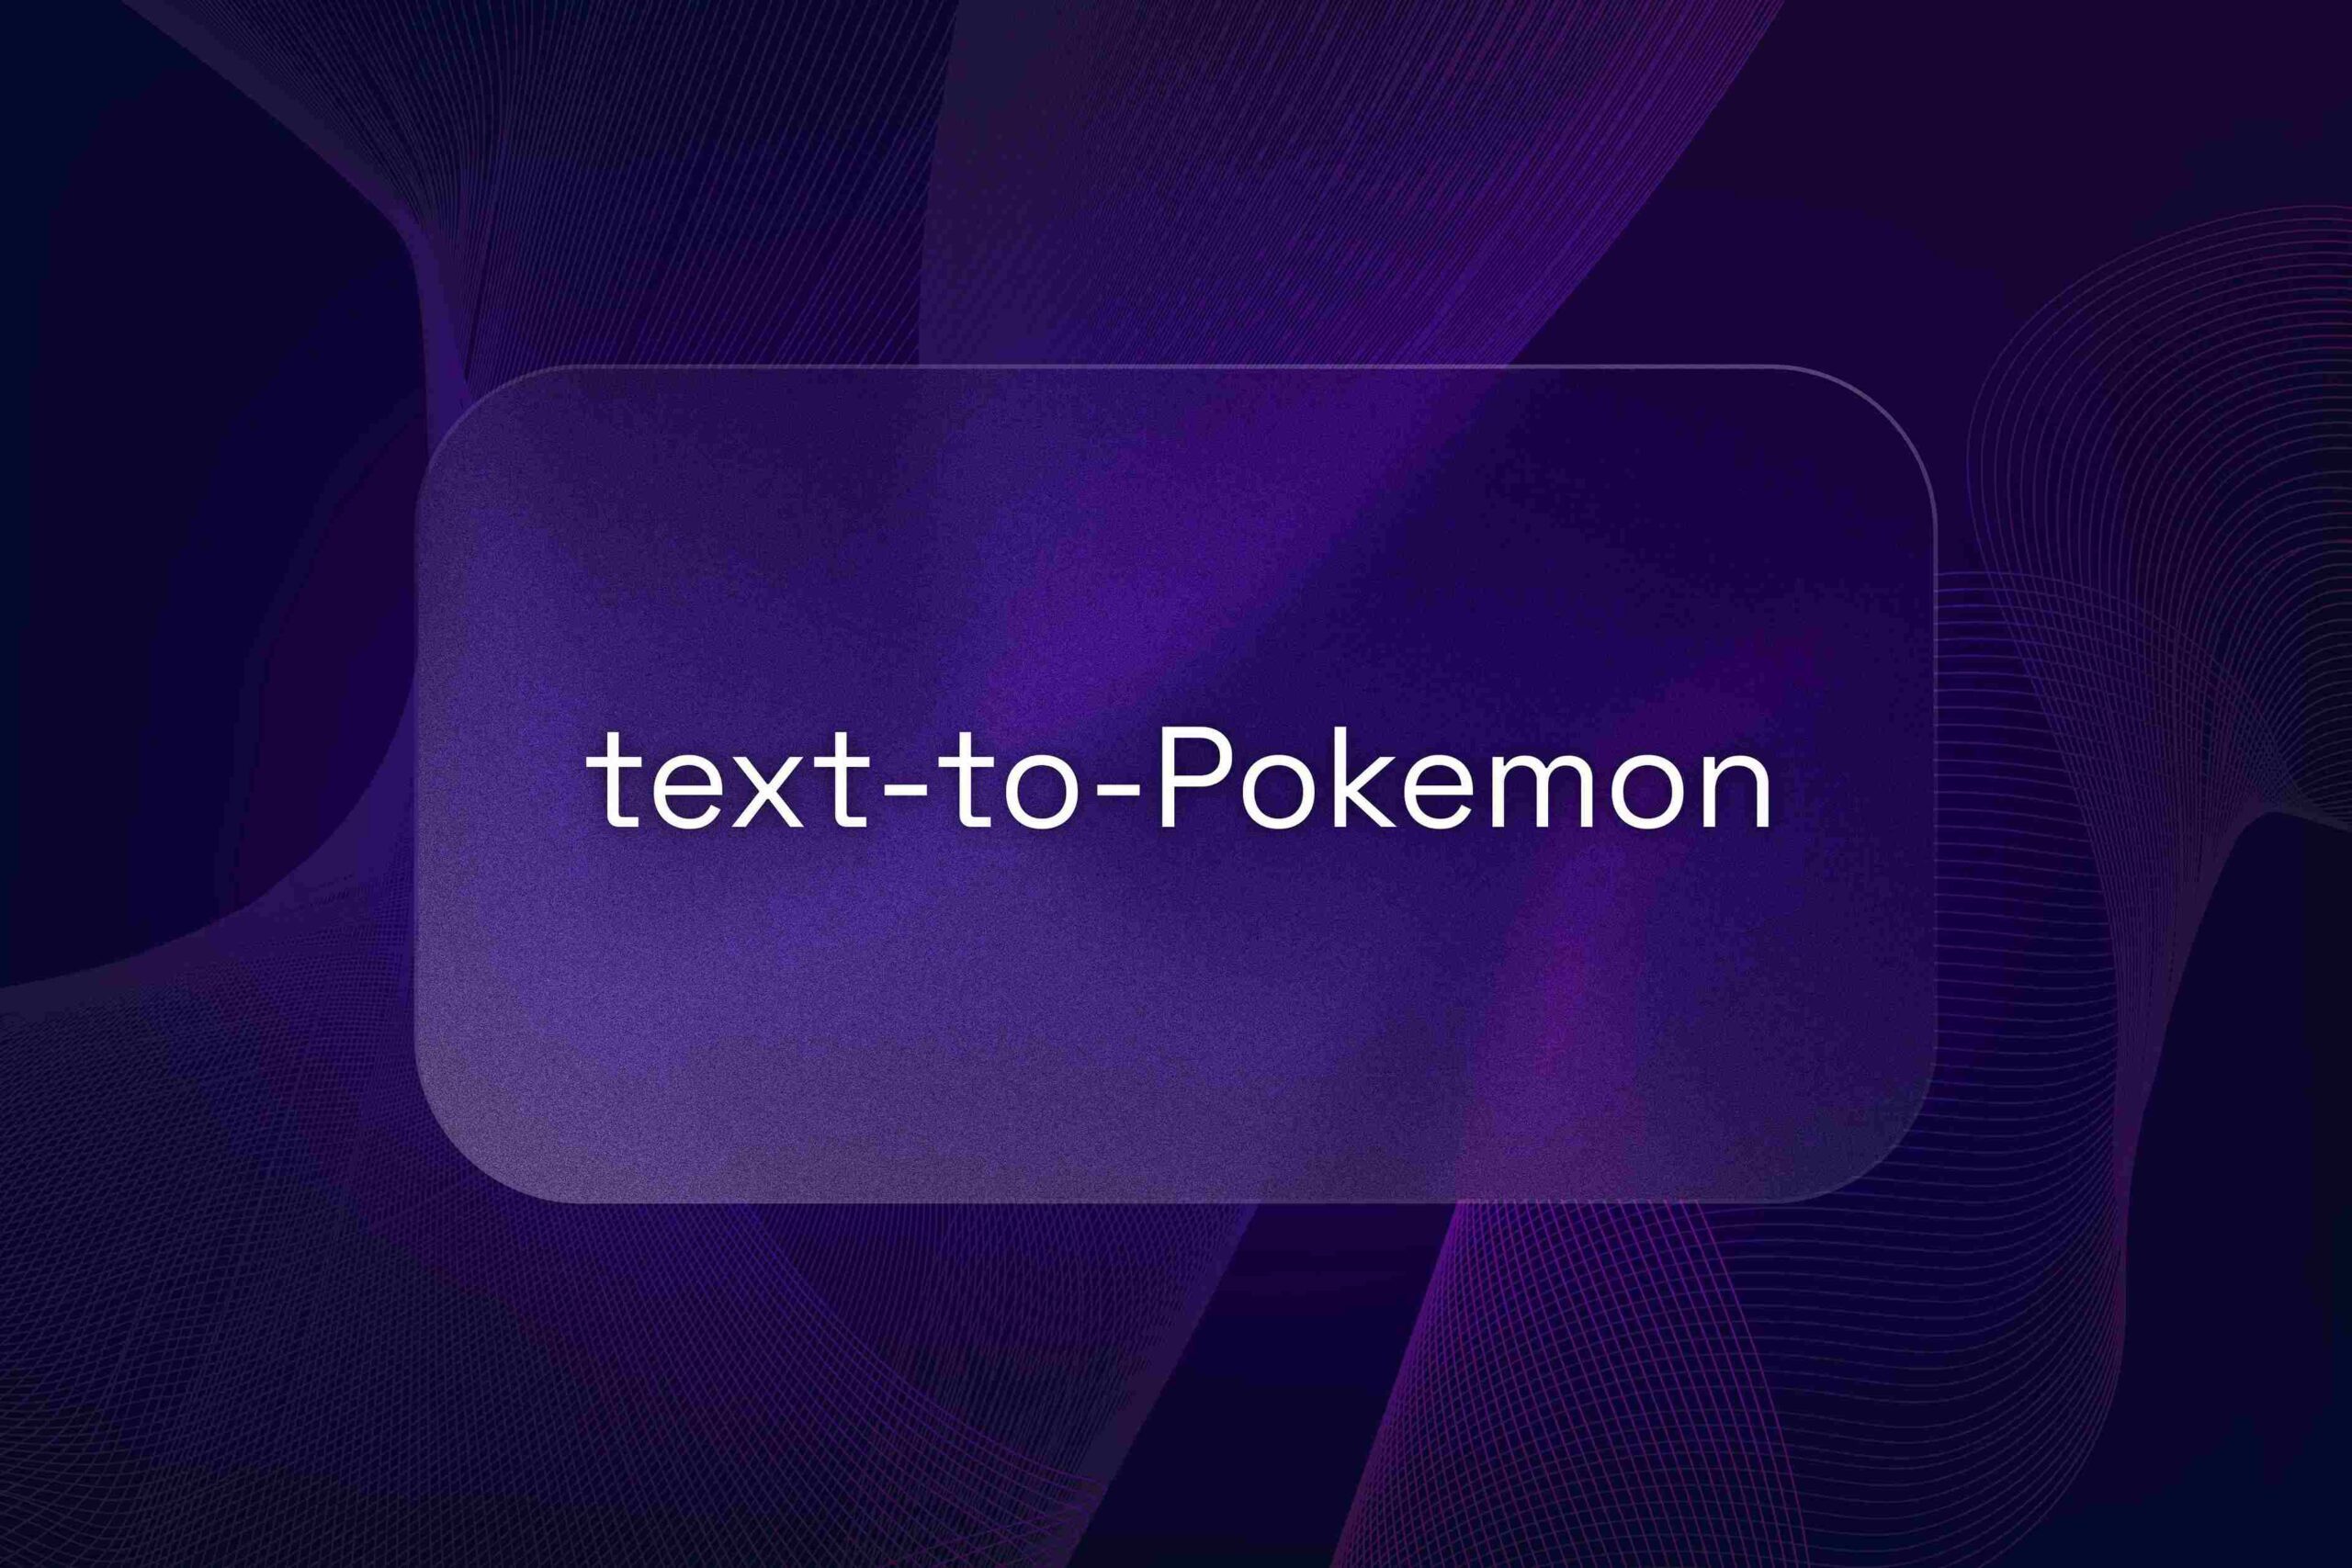 text-to-pokemon